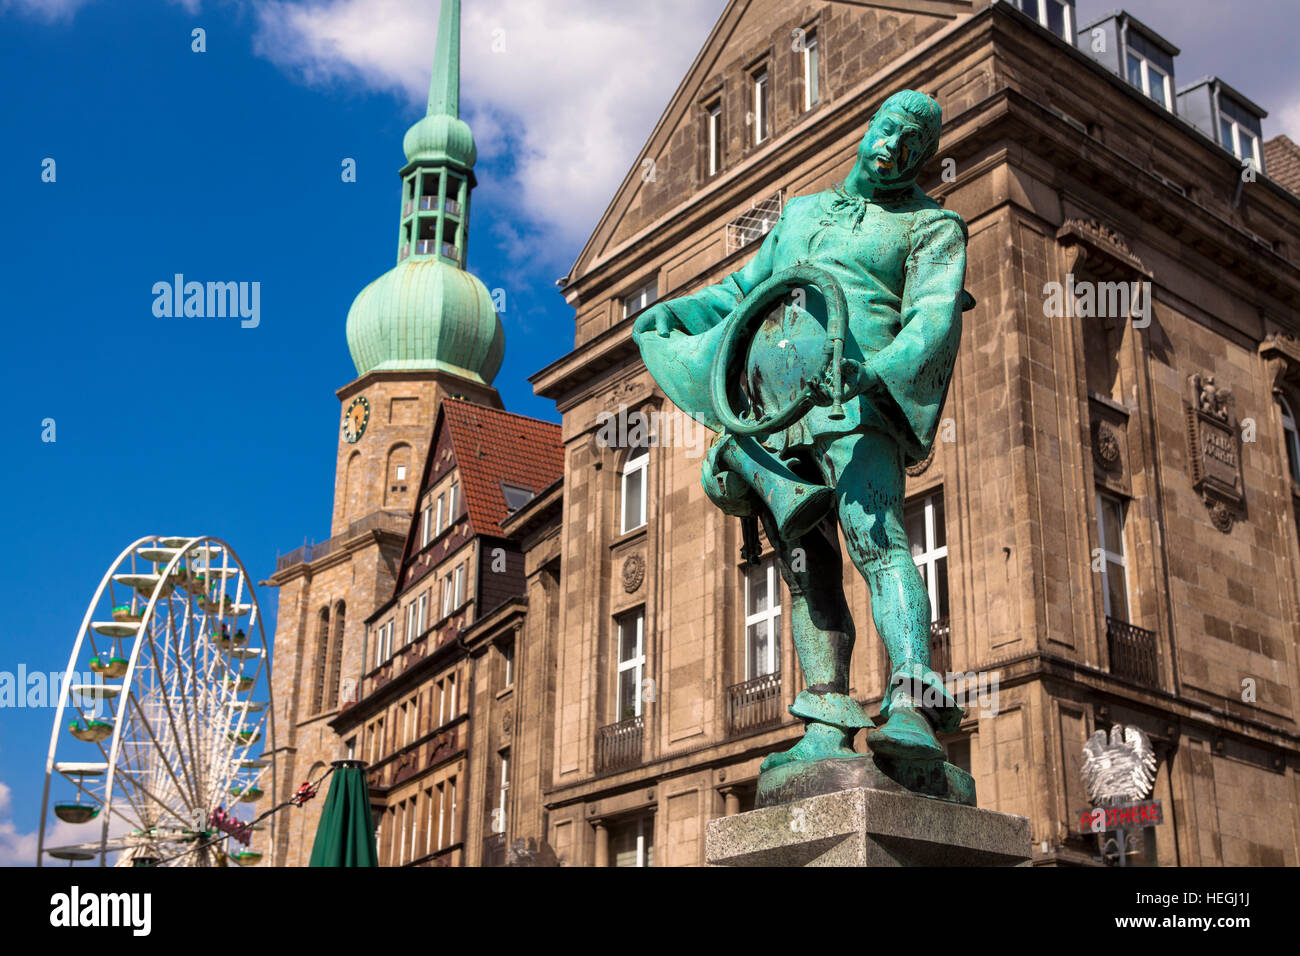 L'Allemagne, la Ruhr, Dortmund, le surpresseur fontaine au vieux marché, à l'arrière-plan une grande roue en face de l'église Reinoldi. Banque D'Images